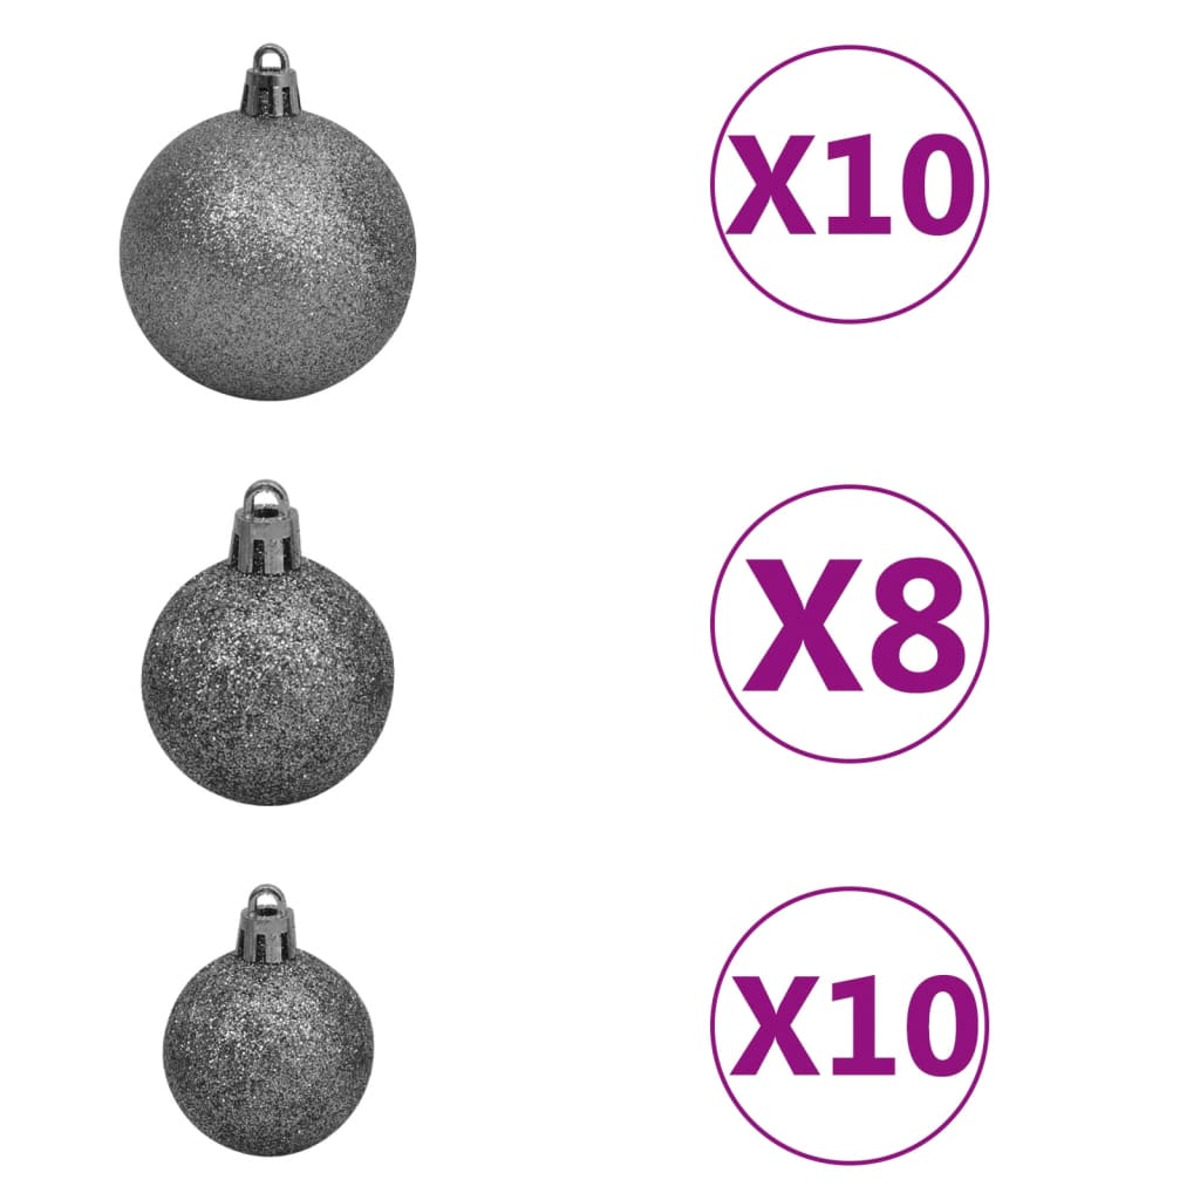 VIDAXL 3210499 Weihnachtsbaum